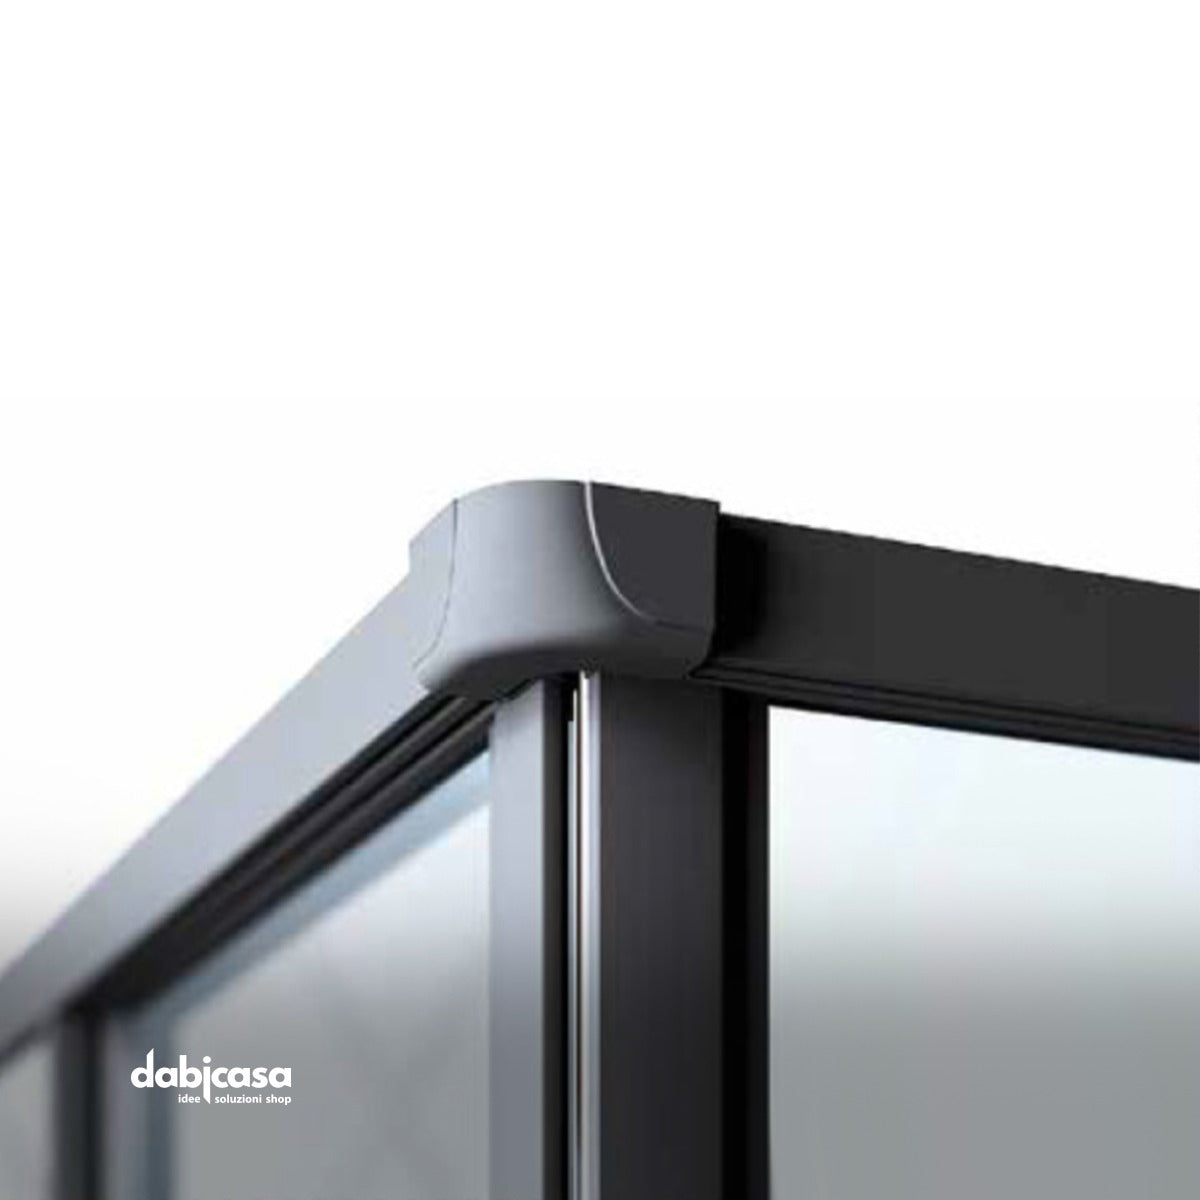 Box doccia "New Smeralda" angolare 70x100 in alluminio e pannello in vetro con profili nero essenza freeshipping - Dabicasa